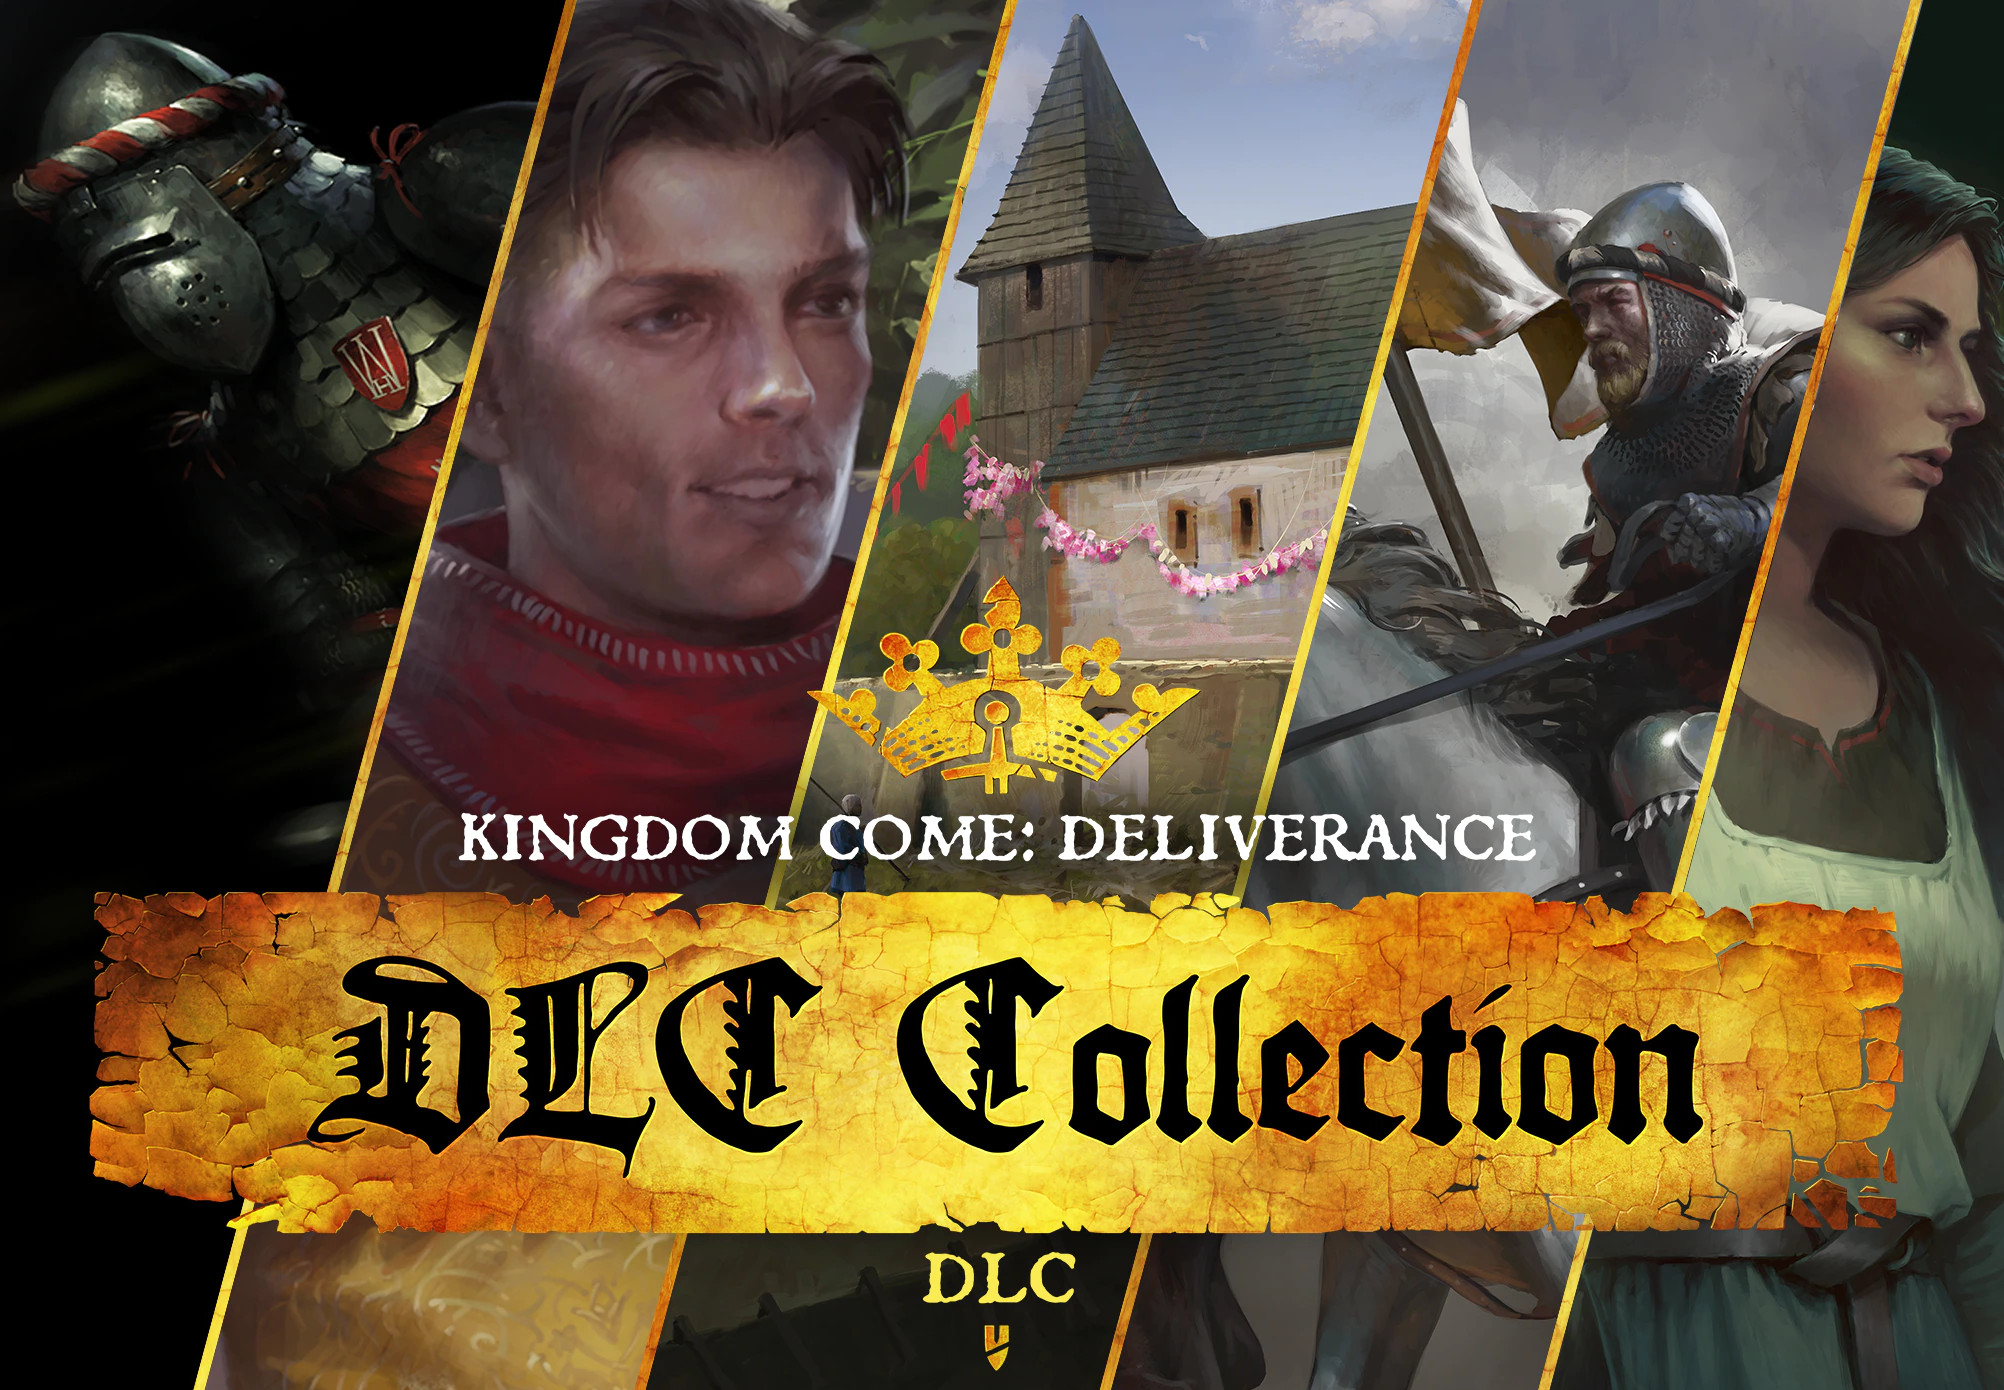 Kingdom Come: Deliverance - DLC Collection Bundle Steam Account